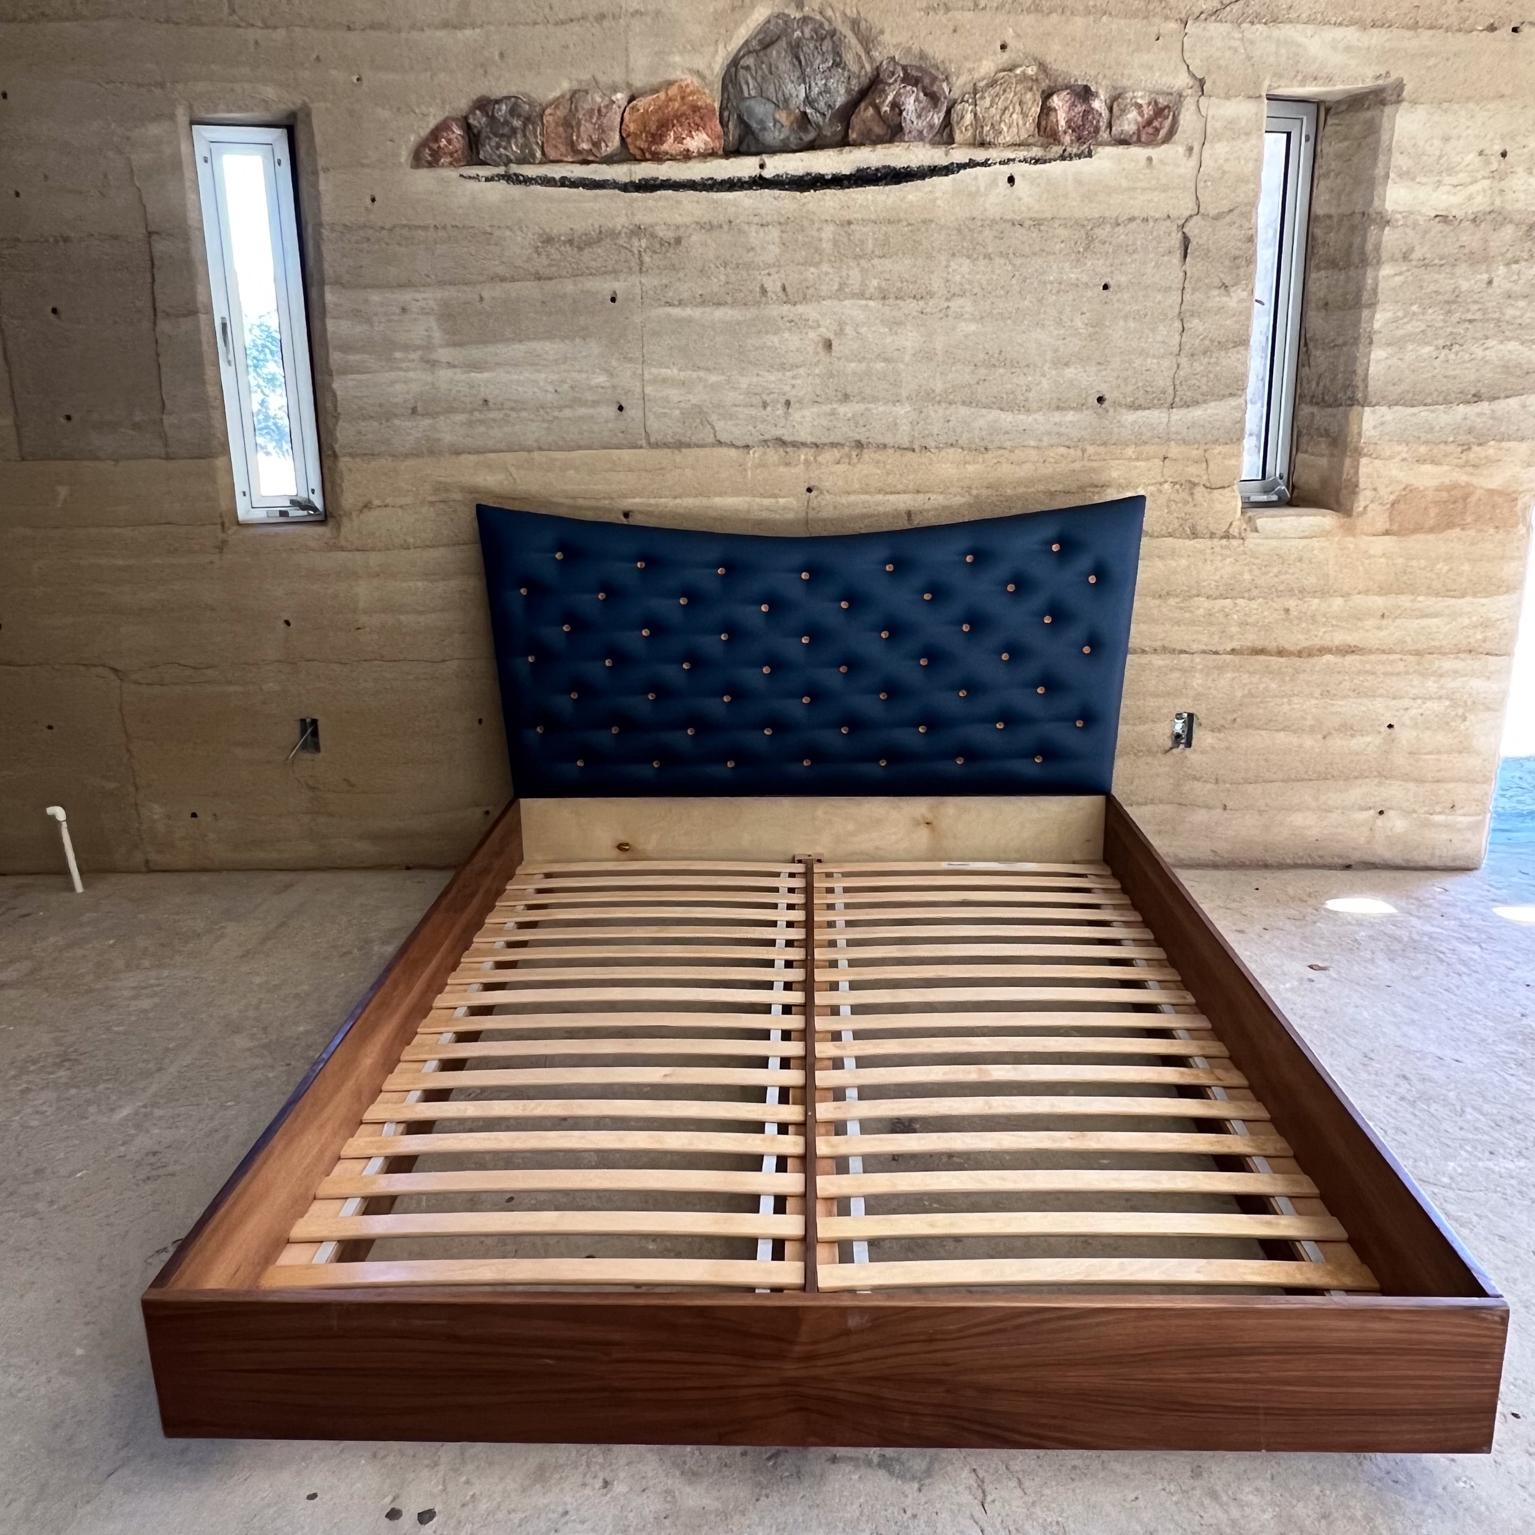 Vintage Blau Queen Plattform Bett gepolstert Knopf
Kopfteil 41 h x 66,25 b Bett 62,38 x 81,5 d Rahmen ist 11 h
Nicht neuer Zustand, unrestaurierter Vintage-Zustand aus Vorbesitz.
Siehe alle Bilder.

